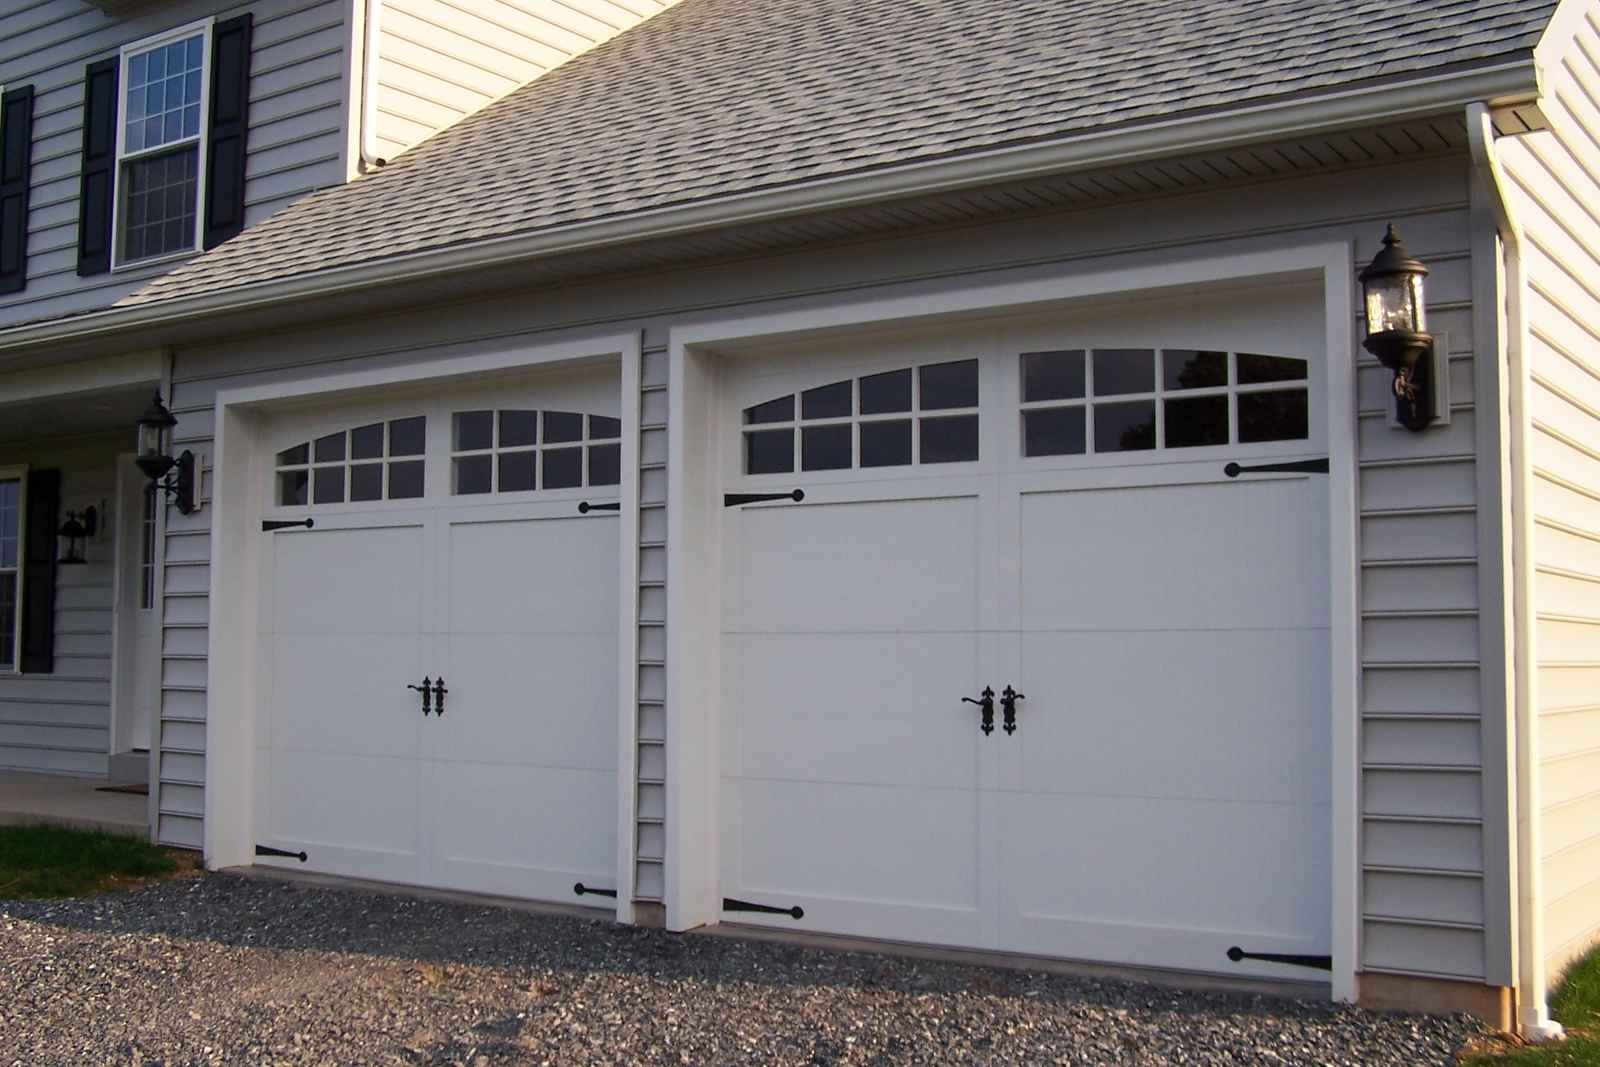 Dakota Door Clopay Overhead Garage Doors Dealer Of Murfreesboro intended for proportions 1600 X 1067